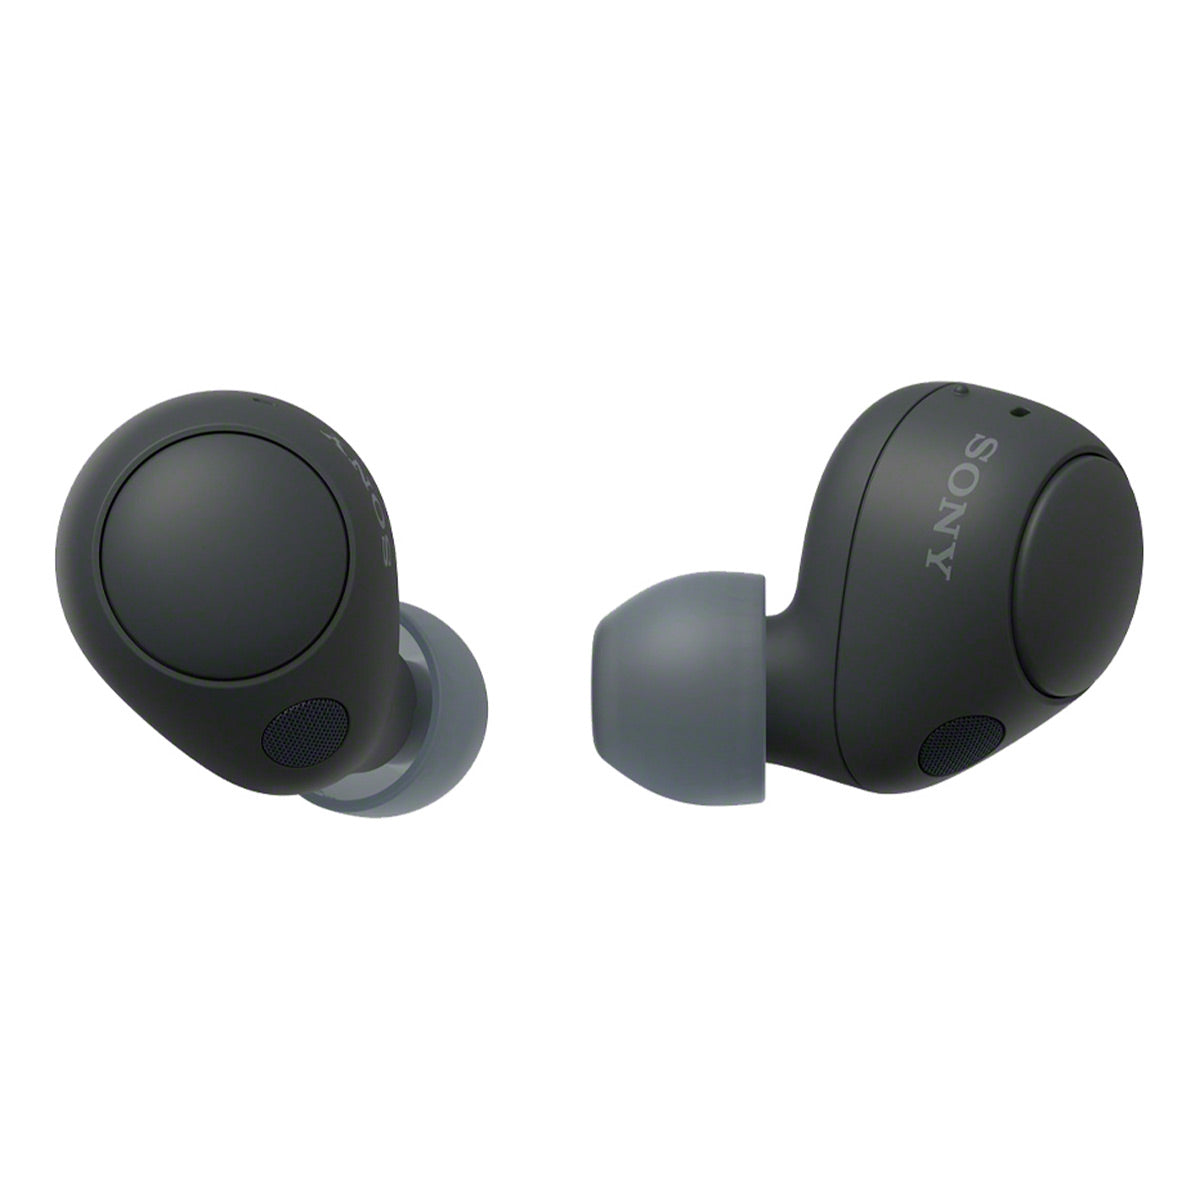 Sony WF-1000XM4 True Wireless Bluetooth Noise Cancelling in-Ear